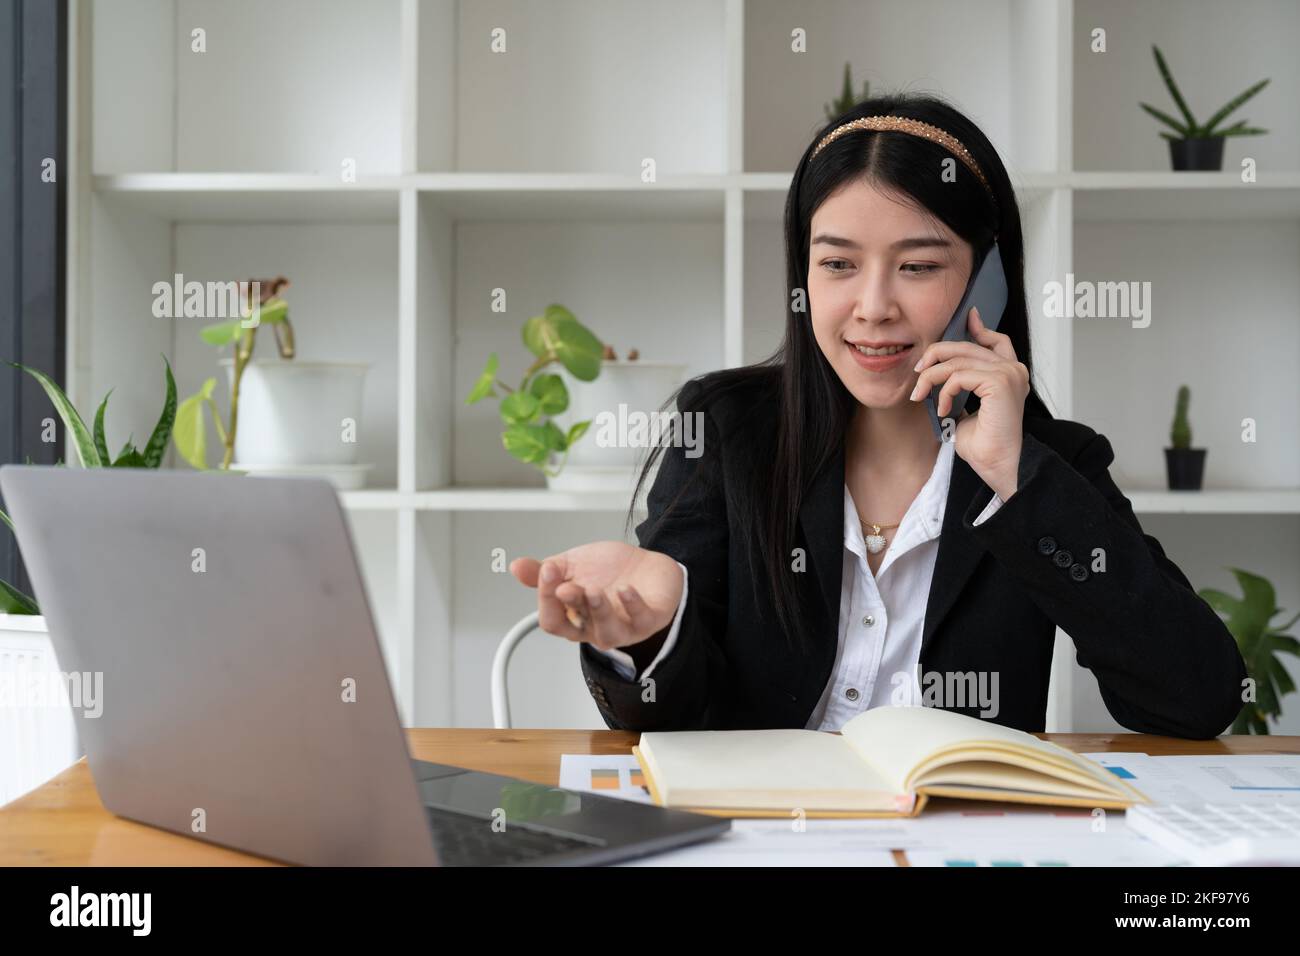 Jeune femme asiatique de bureau parlant à quelqu'un sur son téléphone mobile tout en regardant la distance avec heureux expression faciale. Banque D'Images